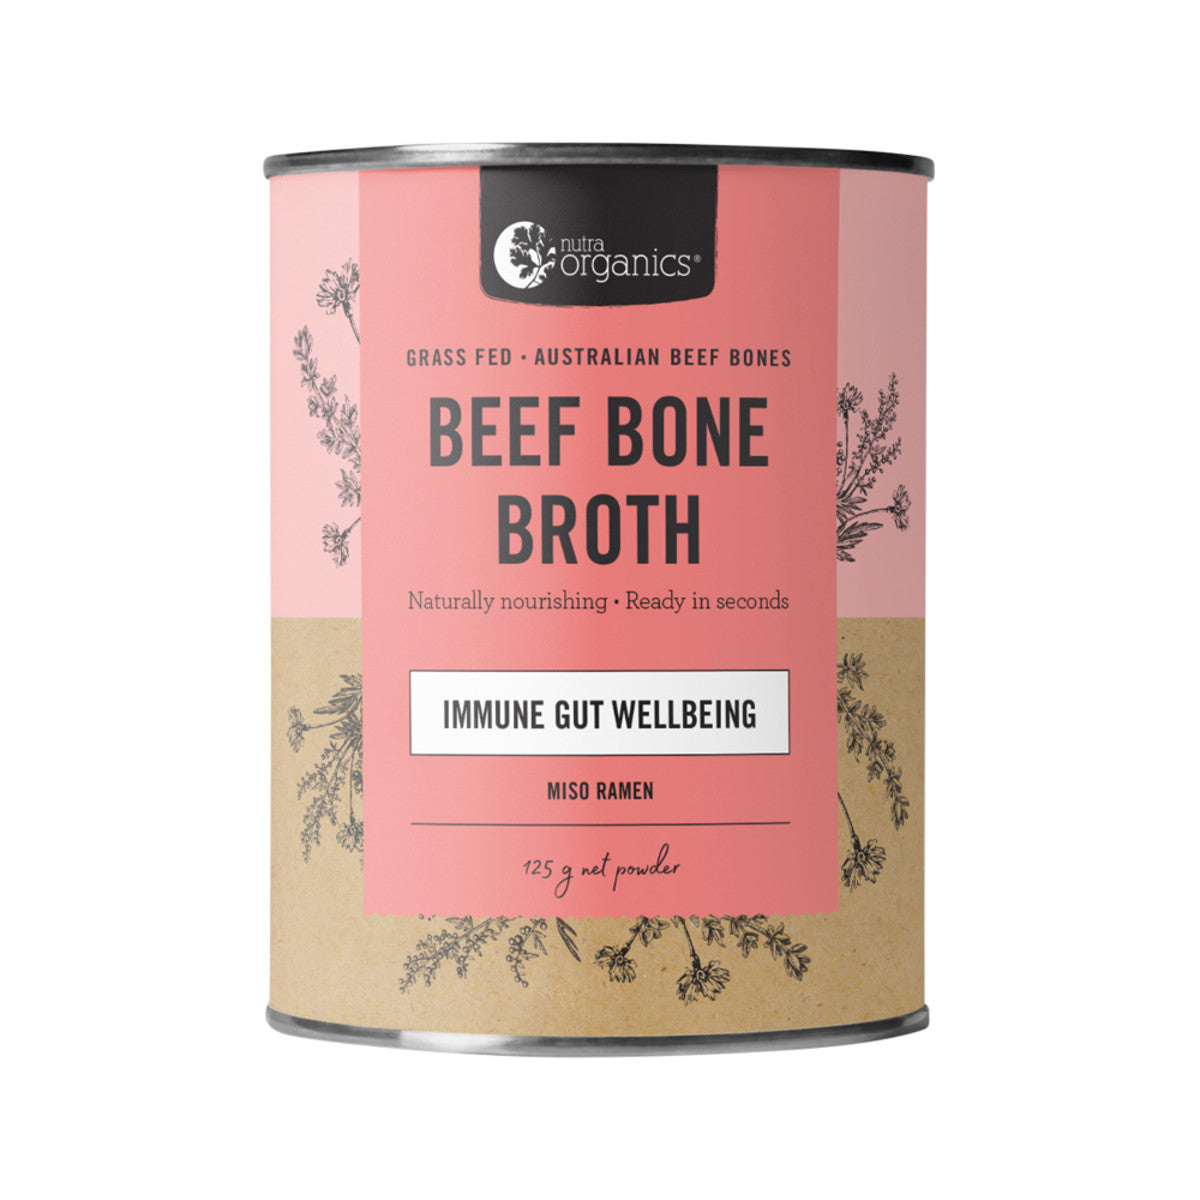 Nutra Organics - Beef Bone Broth Organic Powder